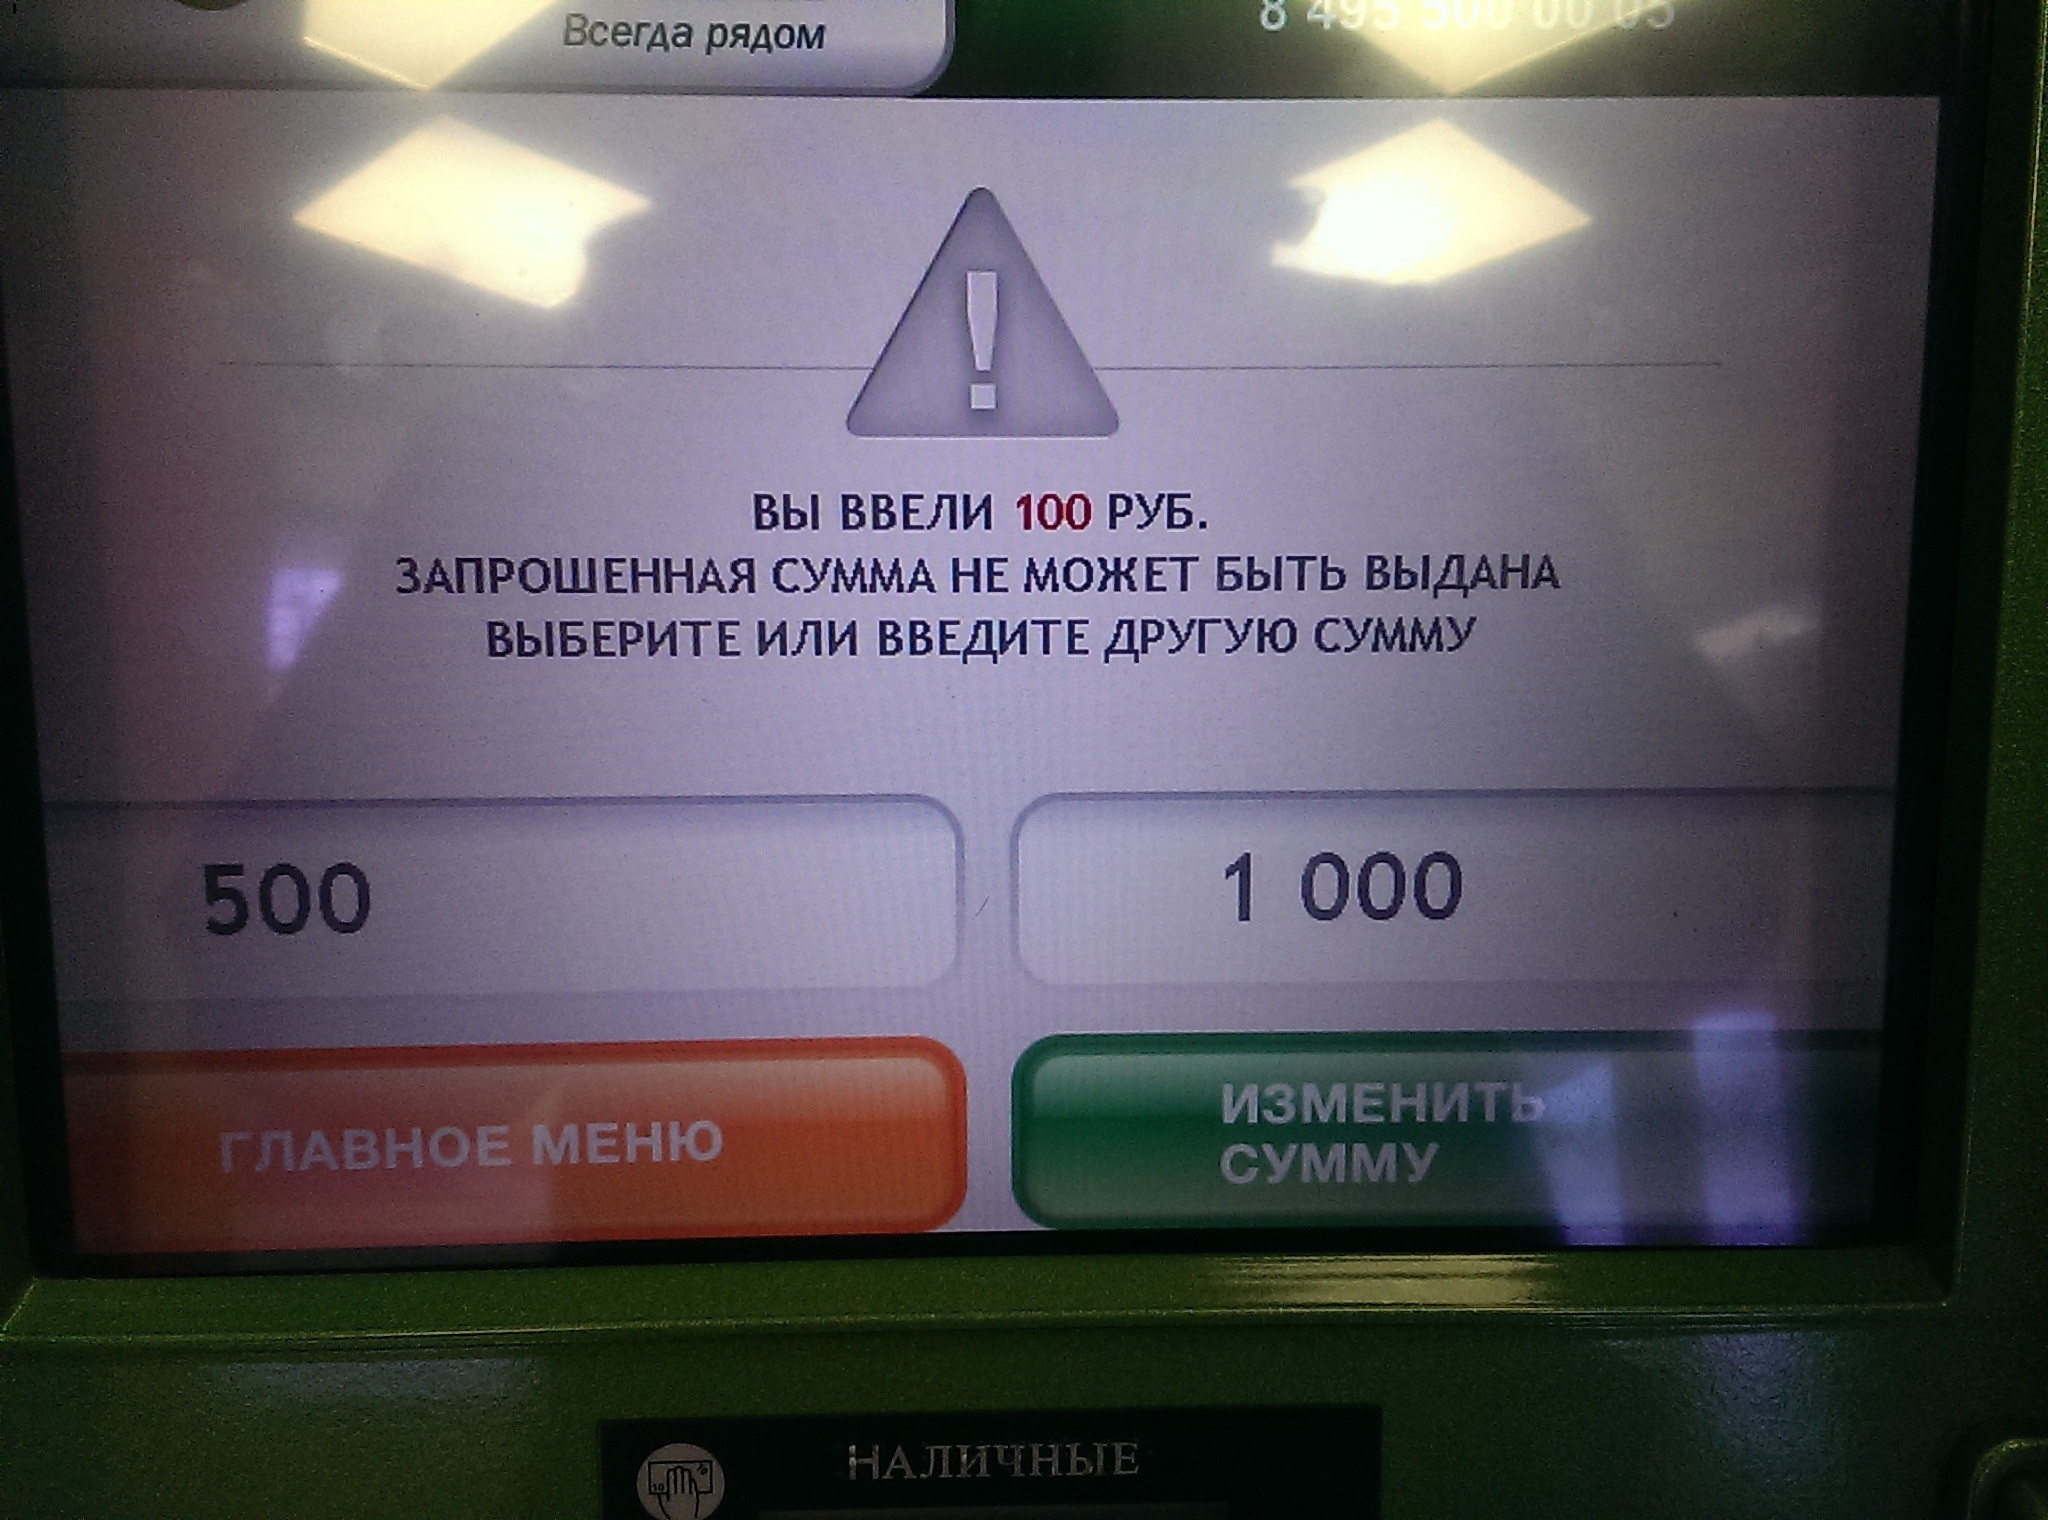 Сбербанк опроверг слух о том, что банкоматы перестали принимать купюры в 5 тысяч рублей